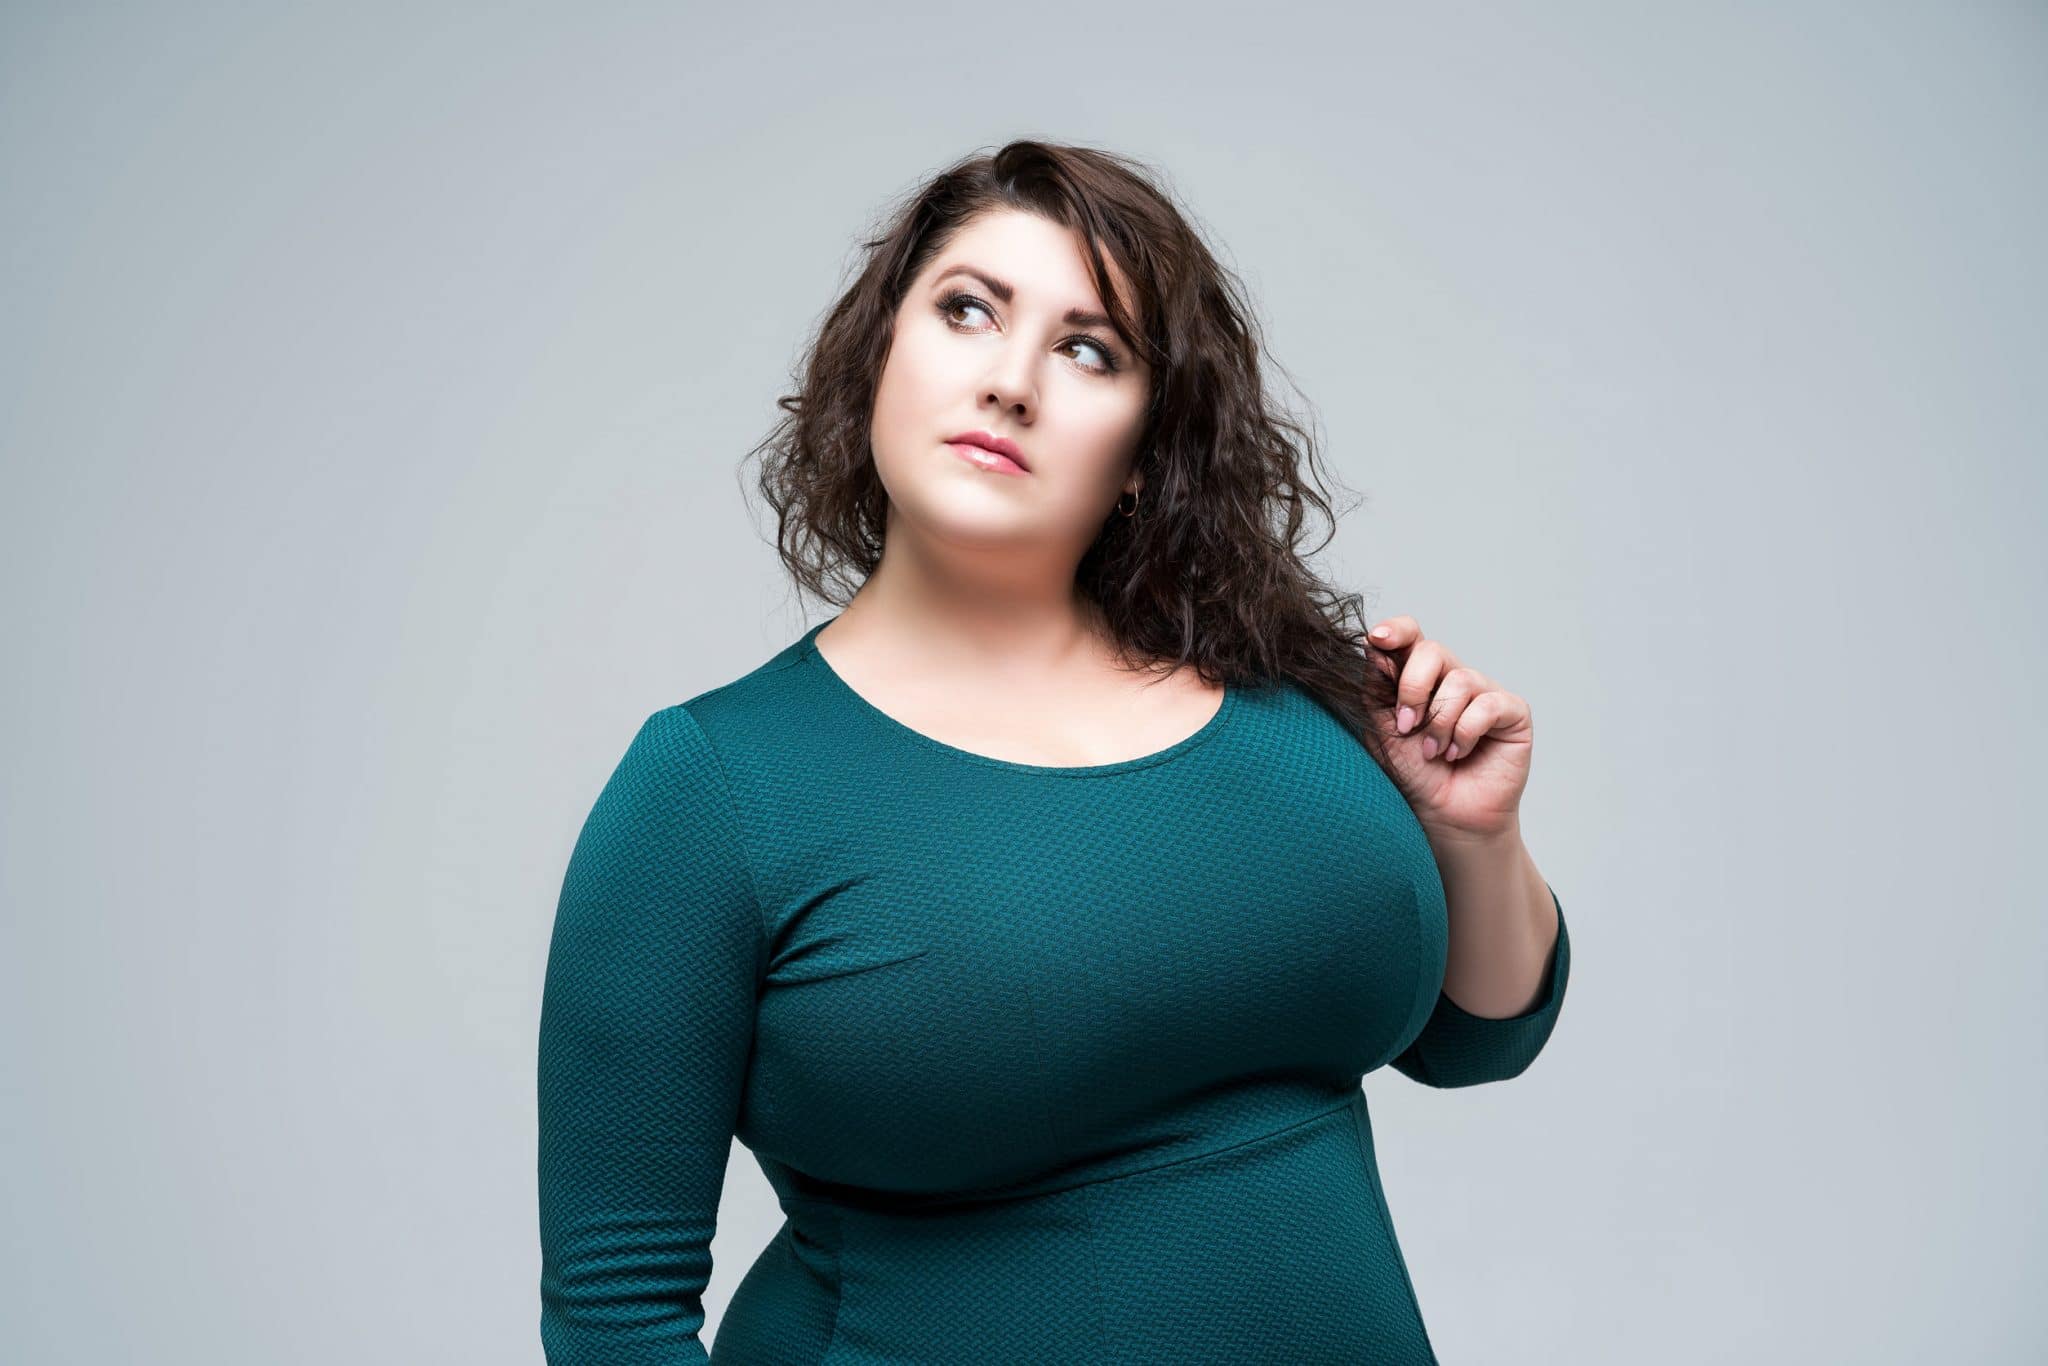 Gray Body Fat Woman Plus Size Underwear Body Shaping Underwear